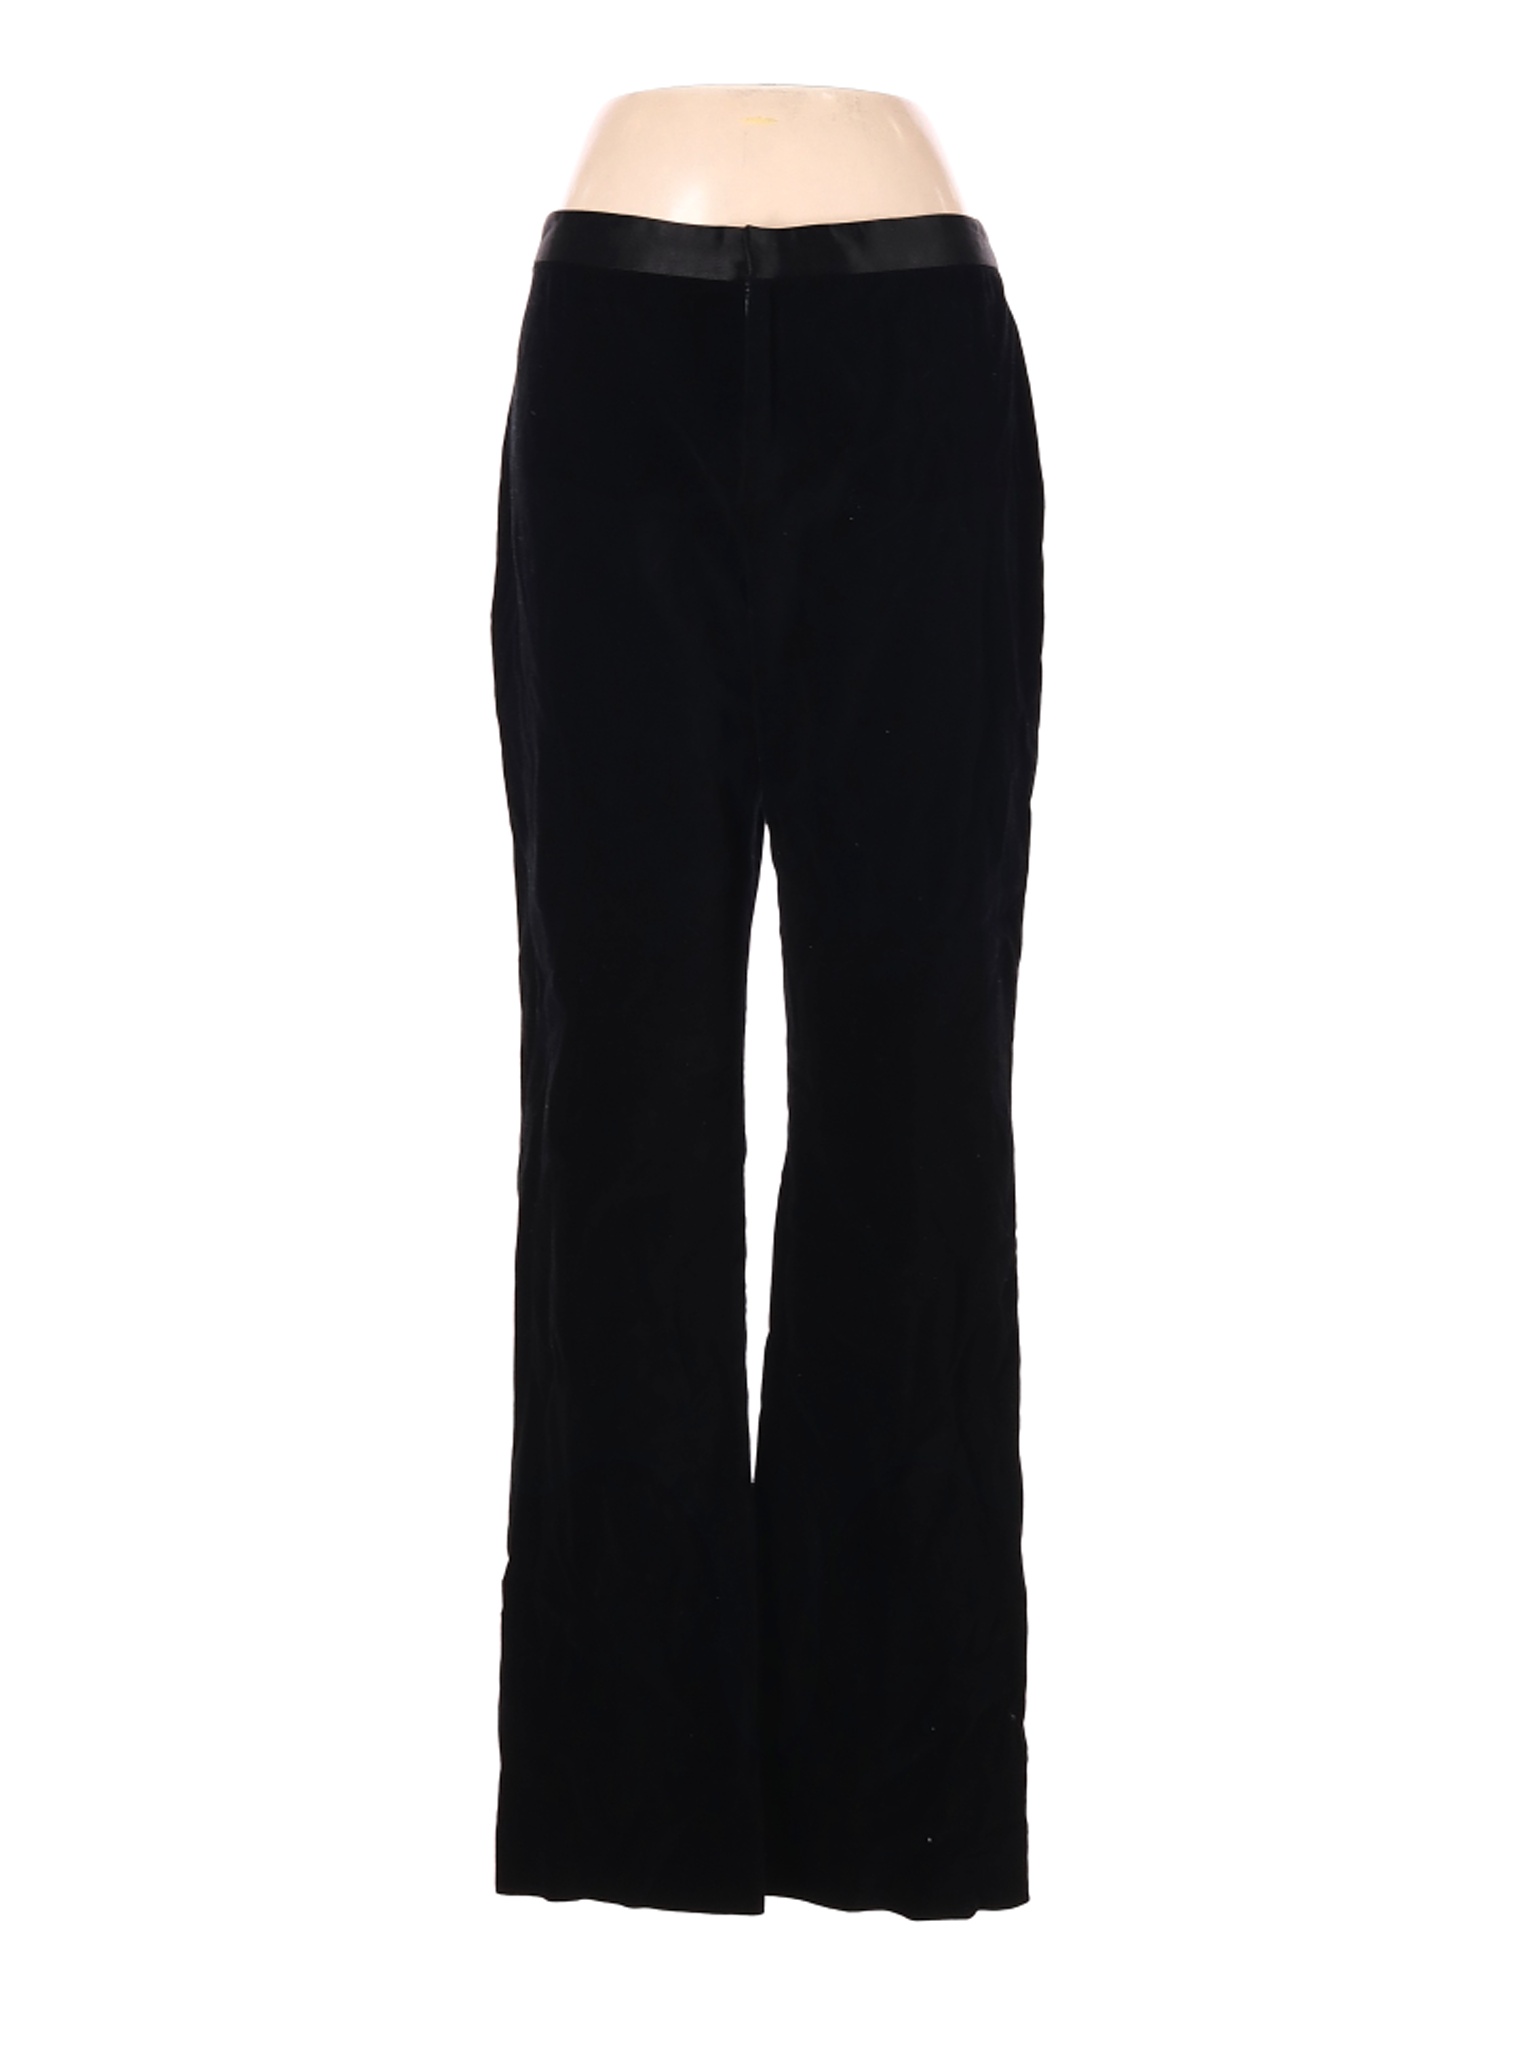 Lauren by Ralph Lauren Women Black Dress Pants 8 | eBay